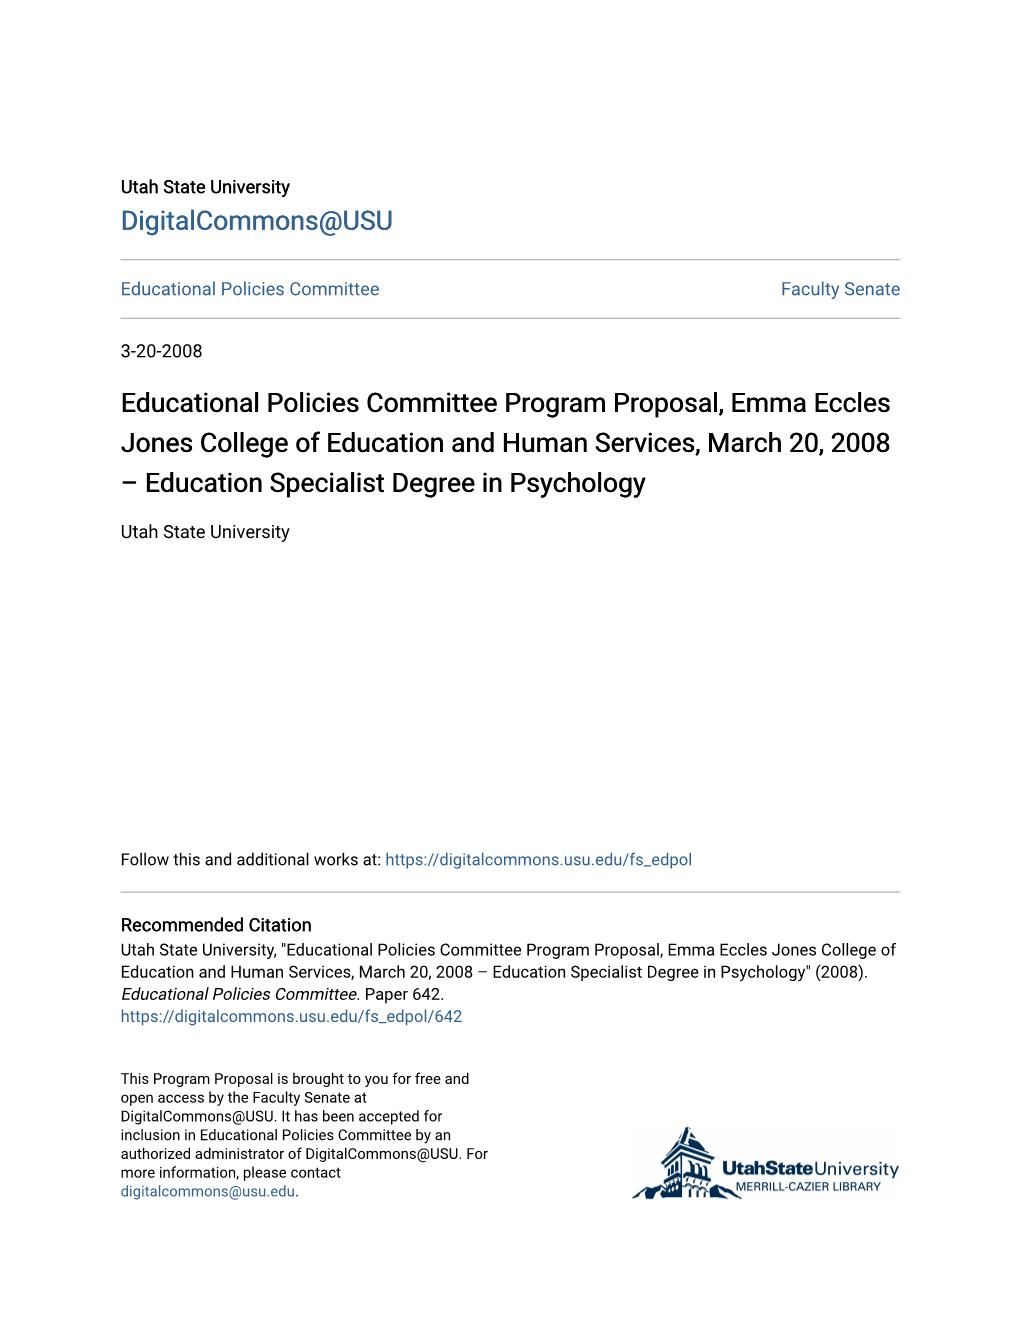 Educational Policies Committee Program